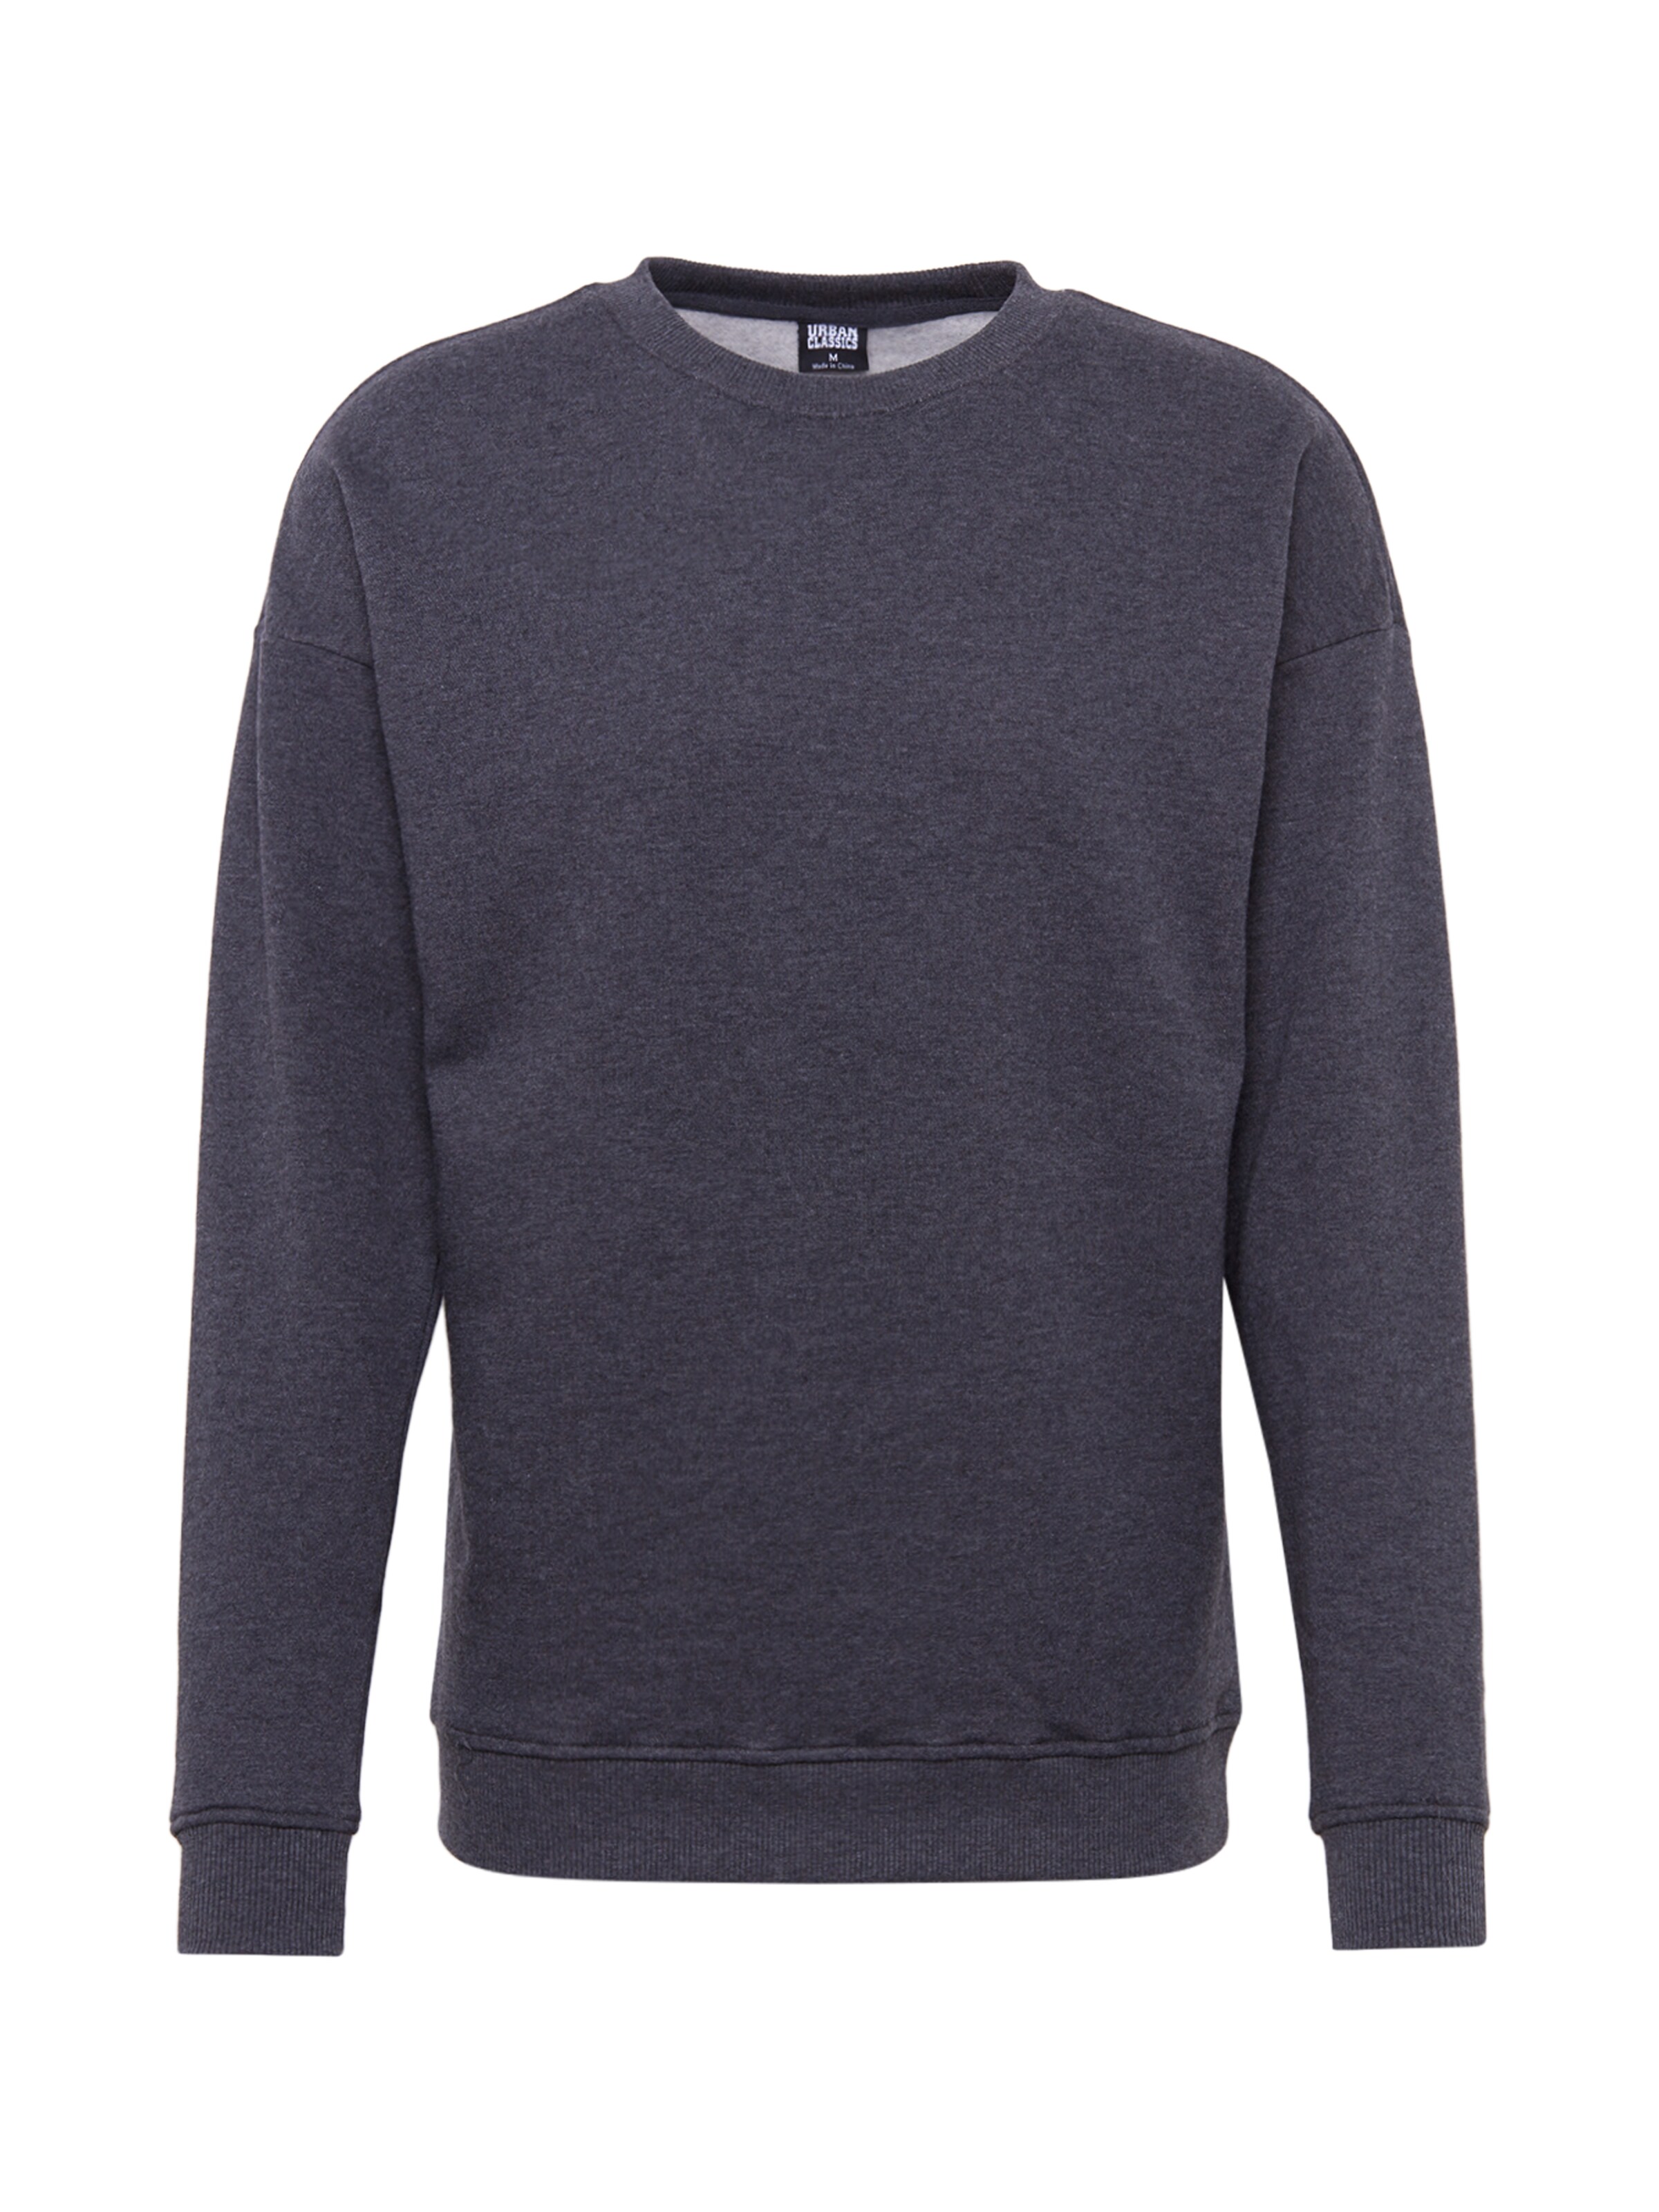 Men Plus sizes | Urban Classics Sweatshirt in Anthracite - TS45226